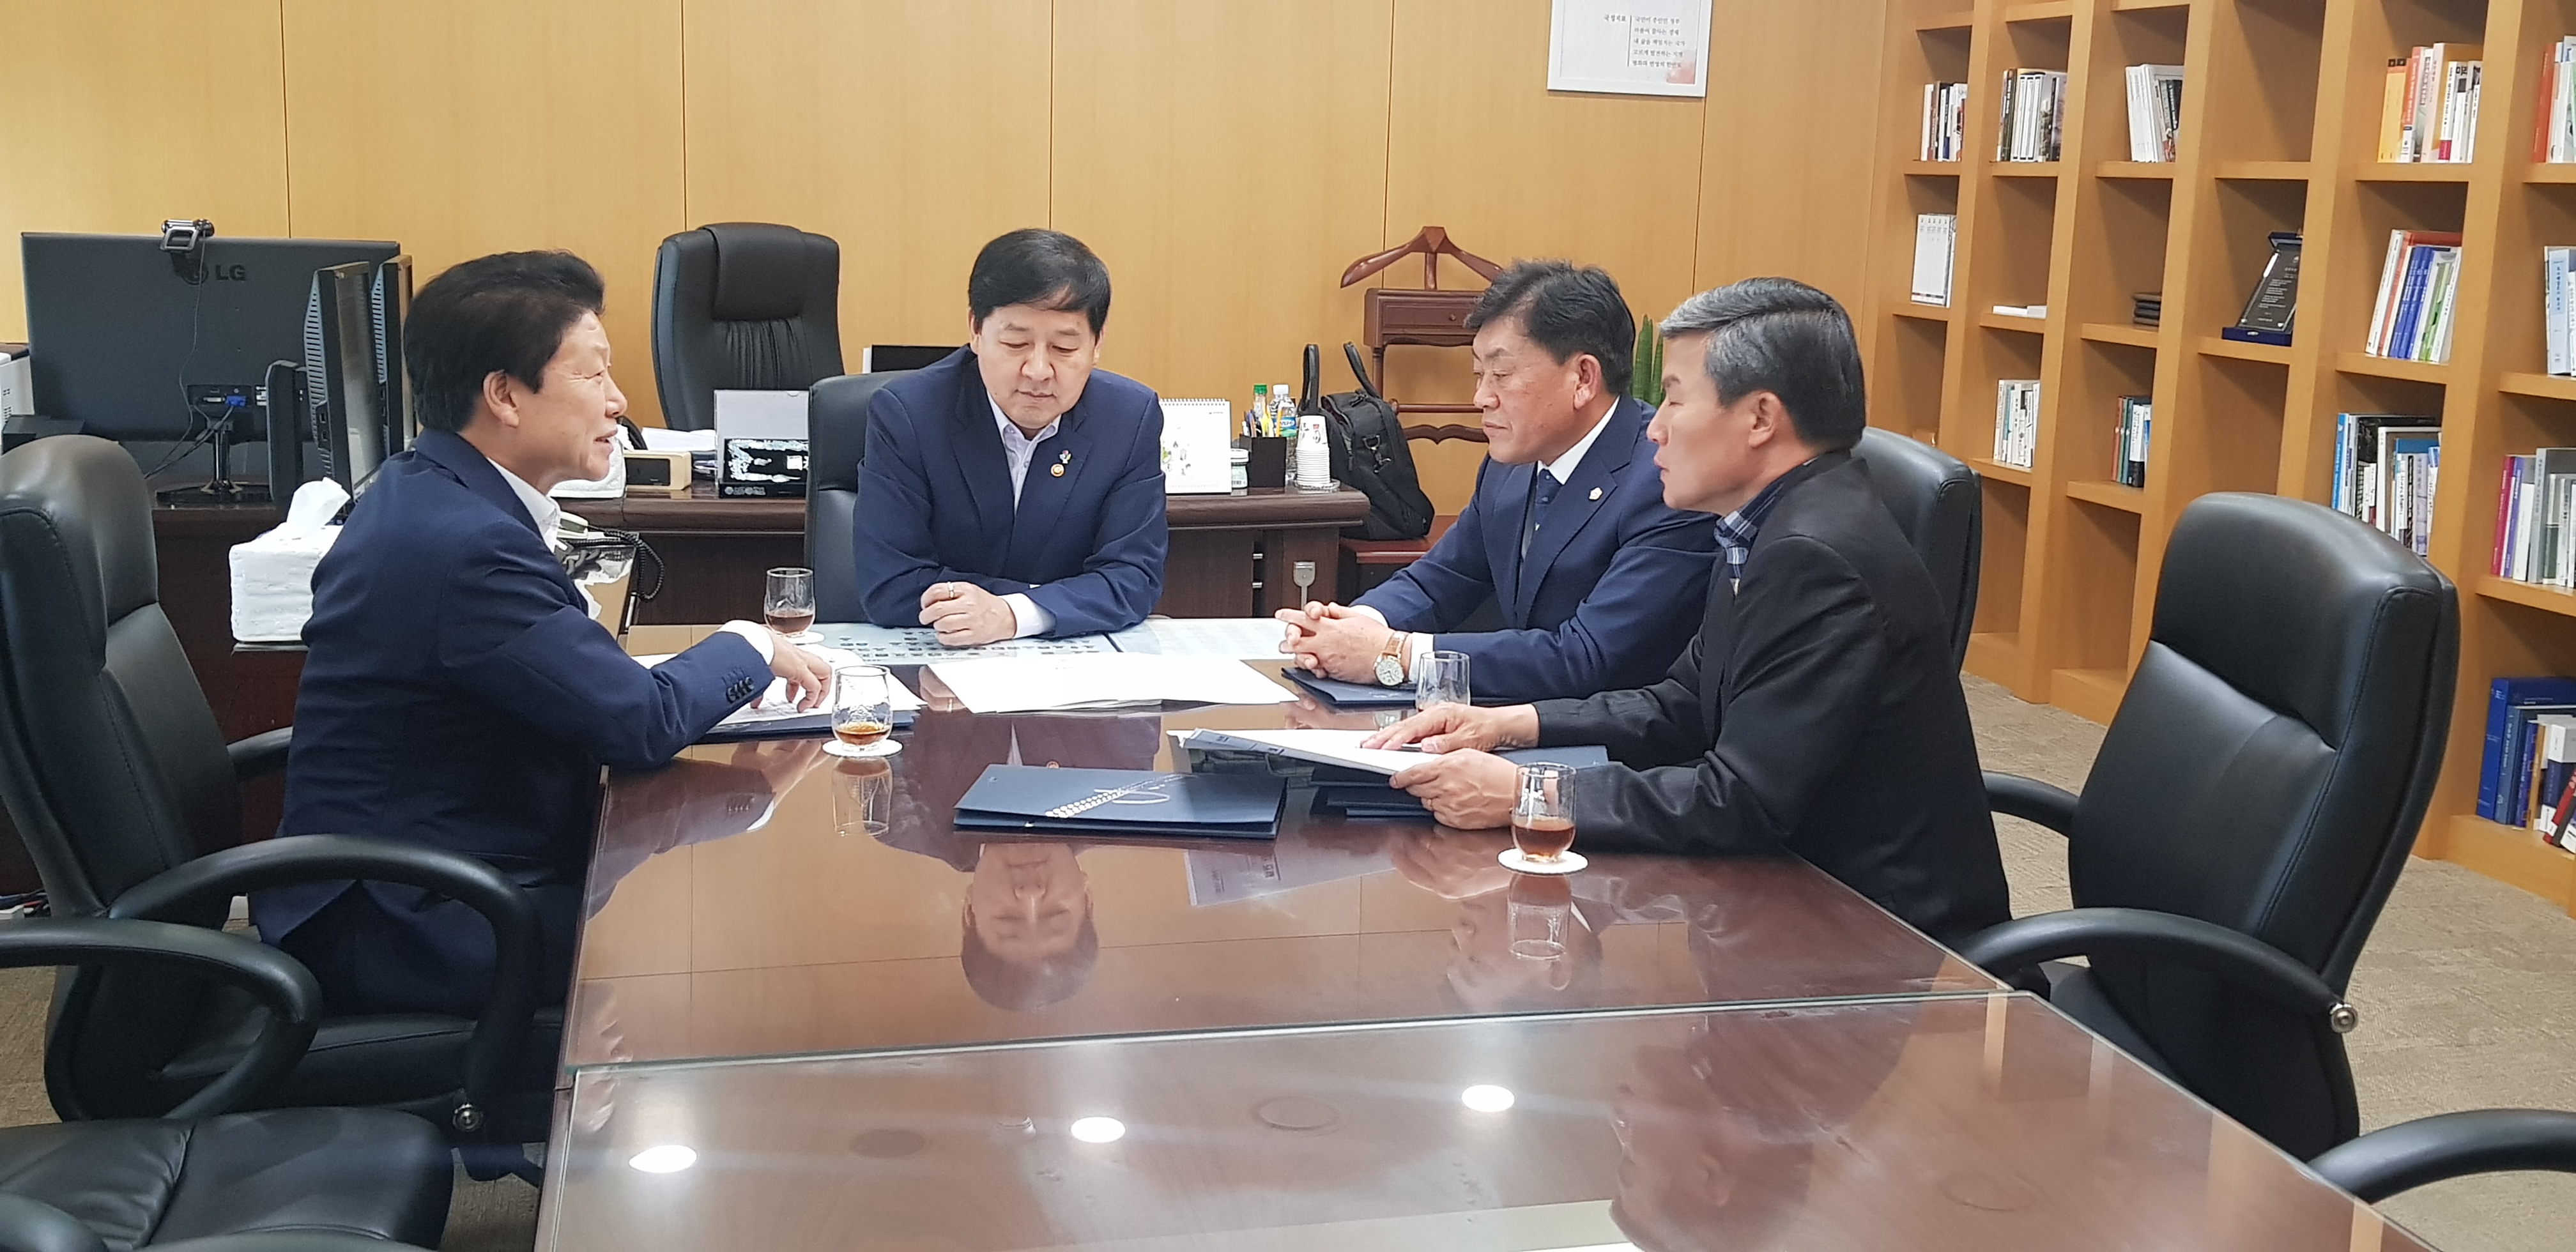 구교강 성주군의회 의장, 국무조정실장과 만나 지역 현안 해결에 총력